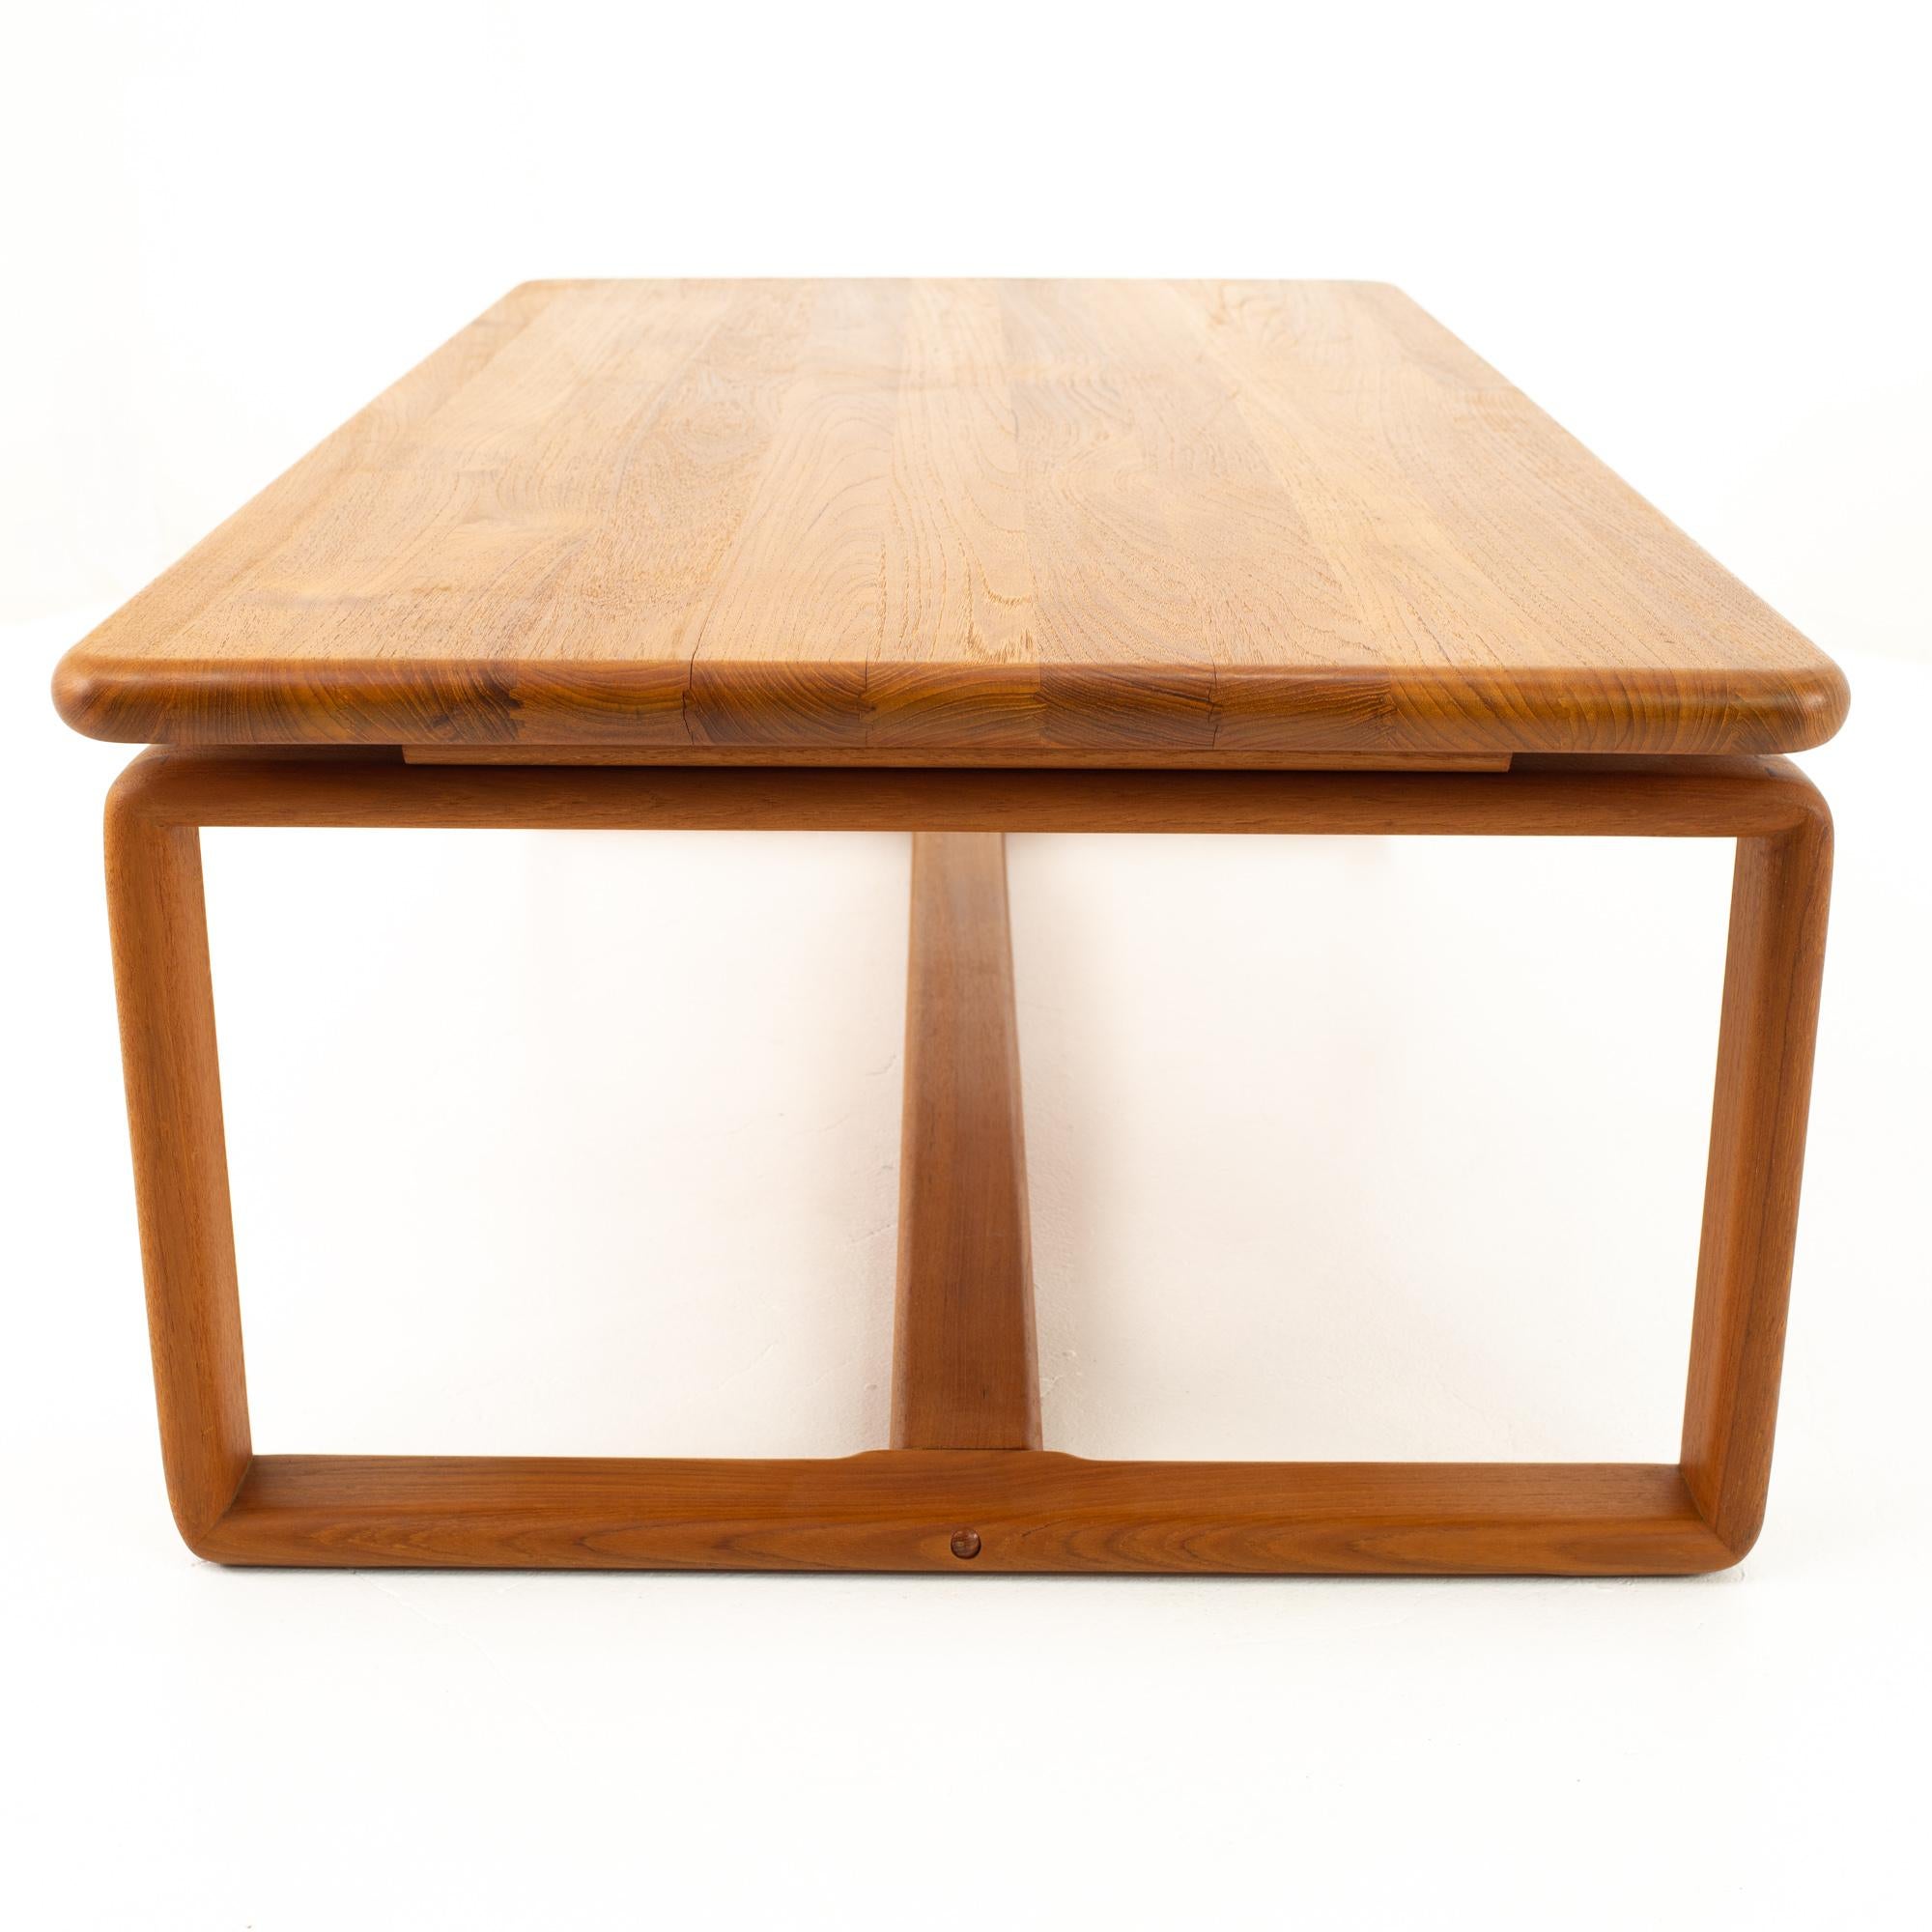 Wood KD Furniture Mid Century Teak Coffee Table